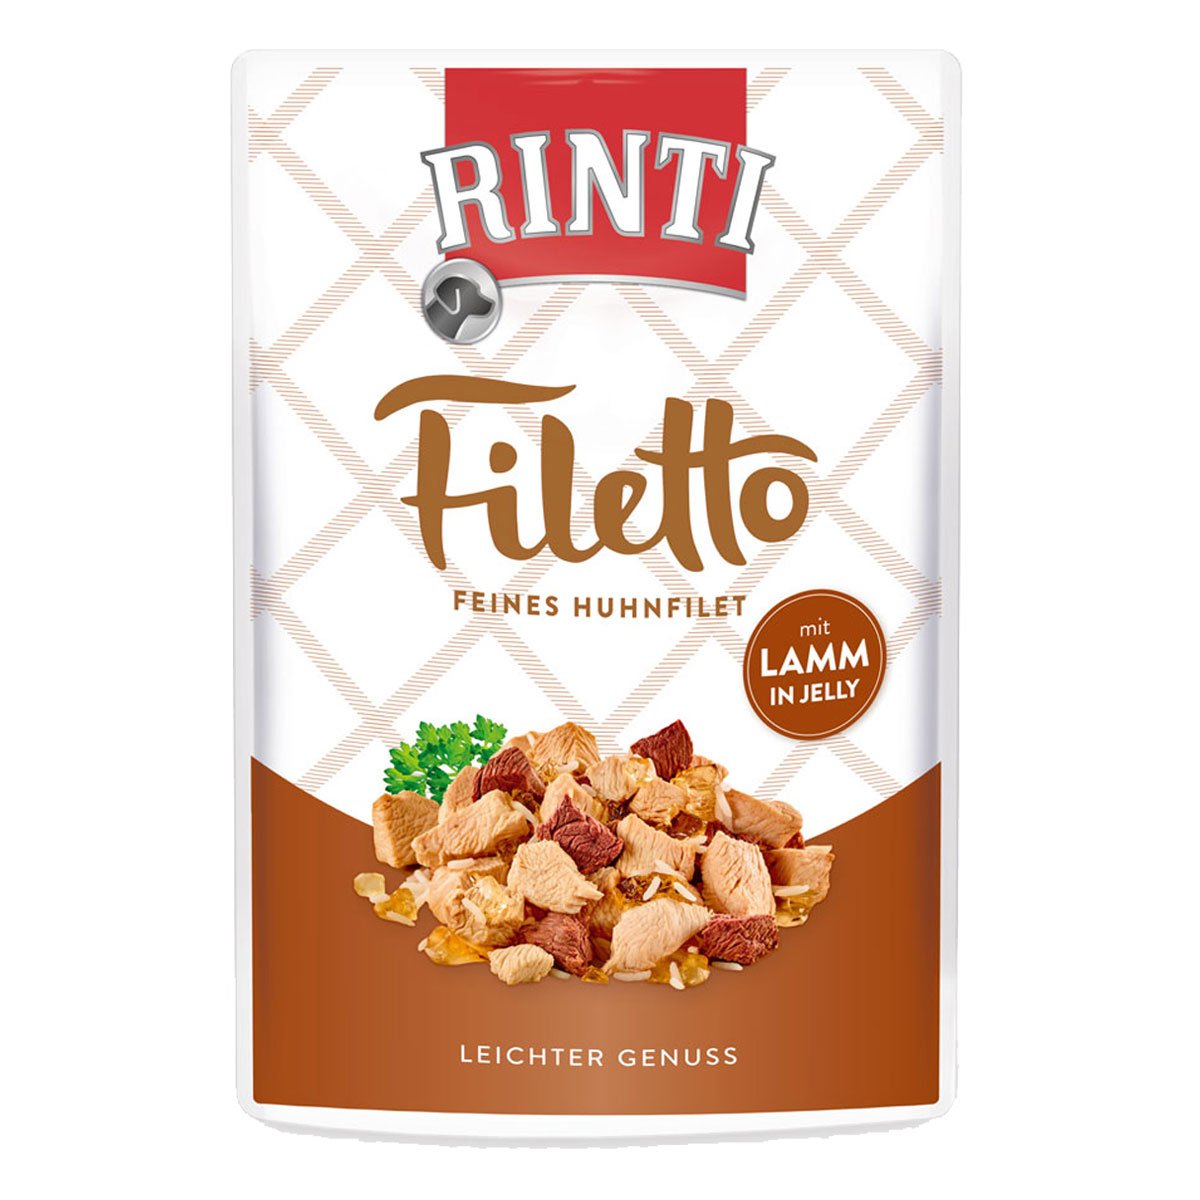 Rinti Filetto Huhn & Lamm in Jelly 24x100g